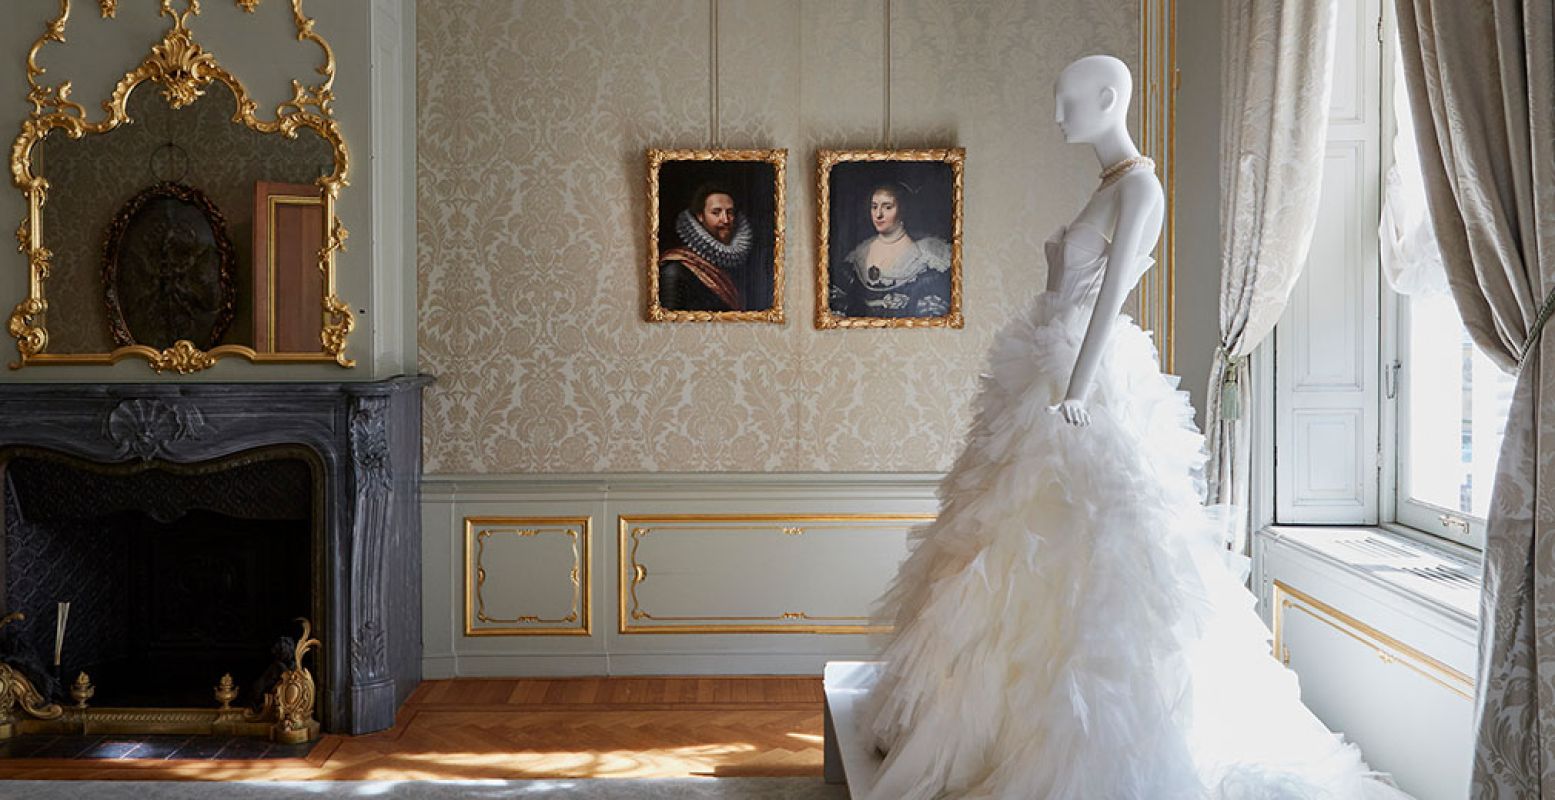 Een fraaie witte jurk naast de portretten die het ontwerp inspireerden. Foto: Nicole Marnati - locatie Hoogsteder Museum Stichting.